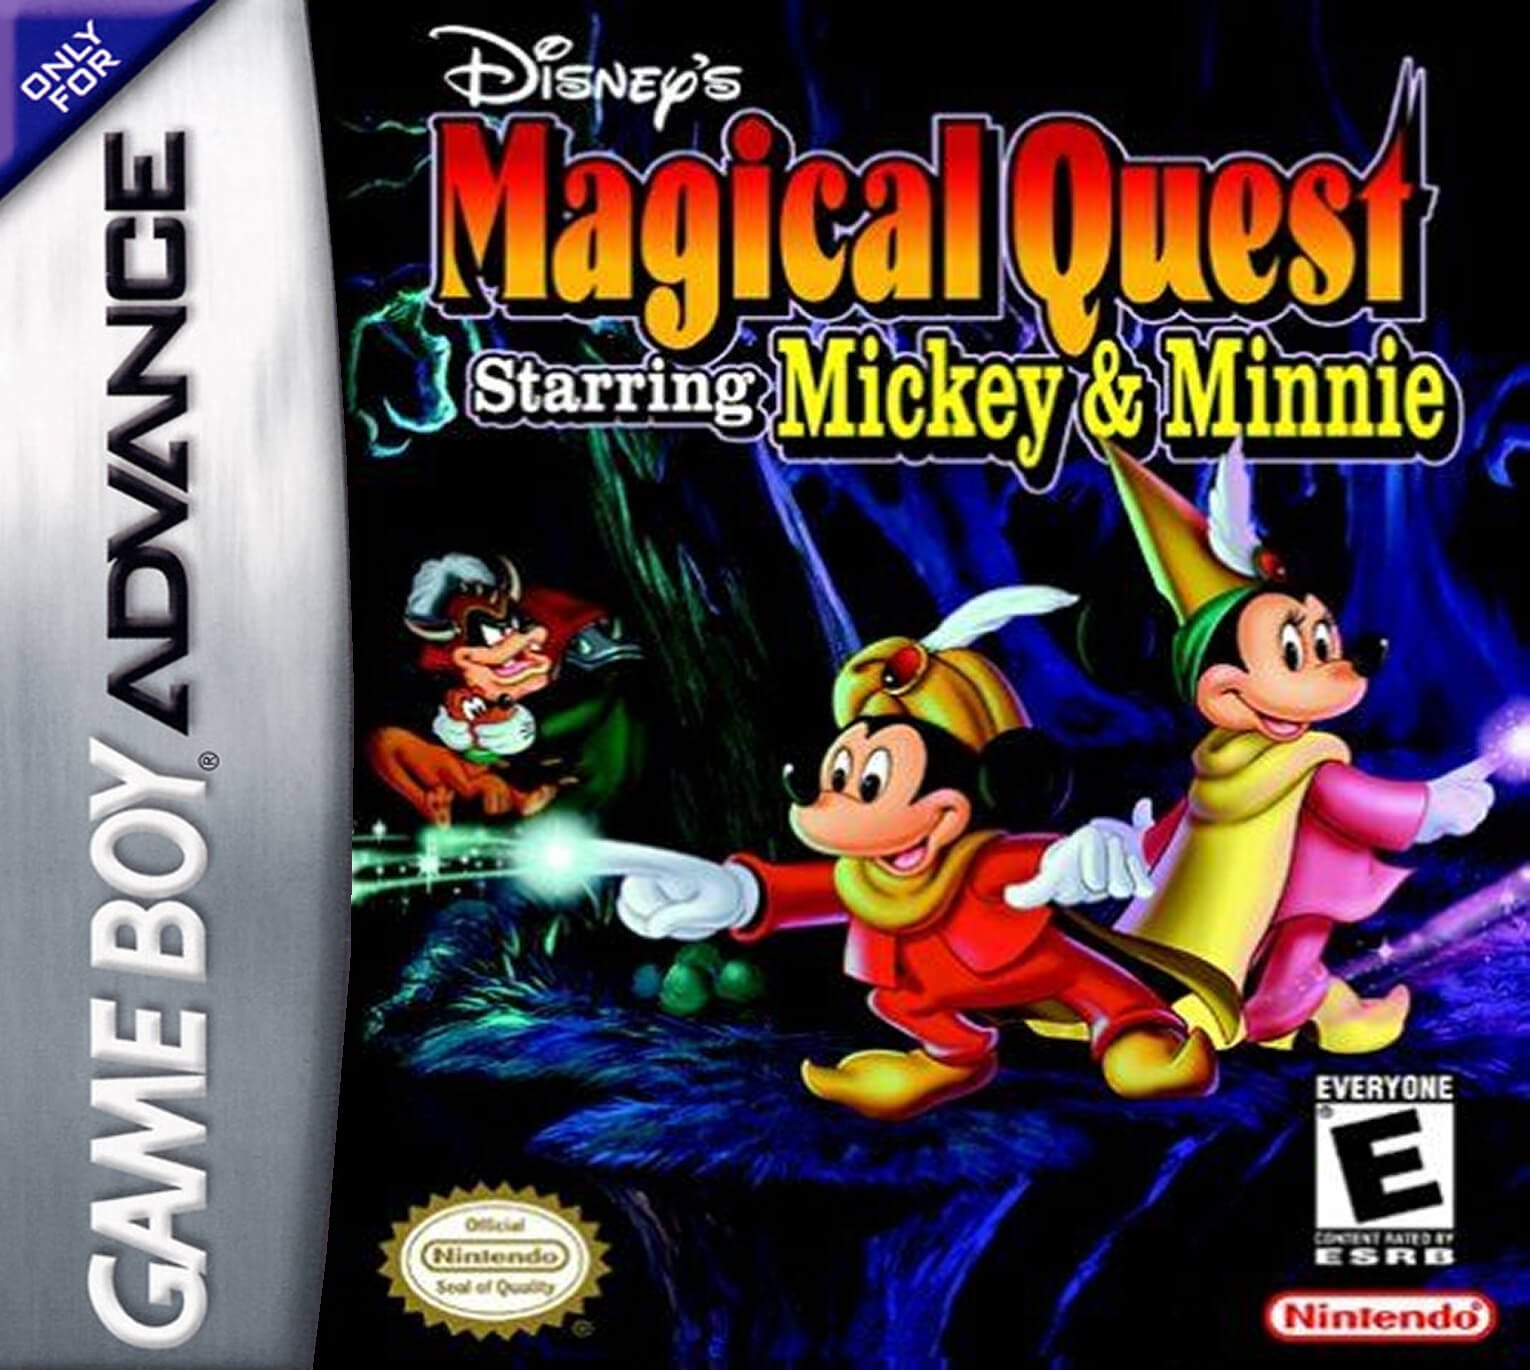 Квест игра дисней. Magical Quest 2 starring Mickey & Minnie GBA. Игра Микки Маус Нинтендо. Mickey and Minnie game boy Advance. Game boy Advance Disney.